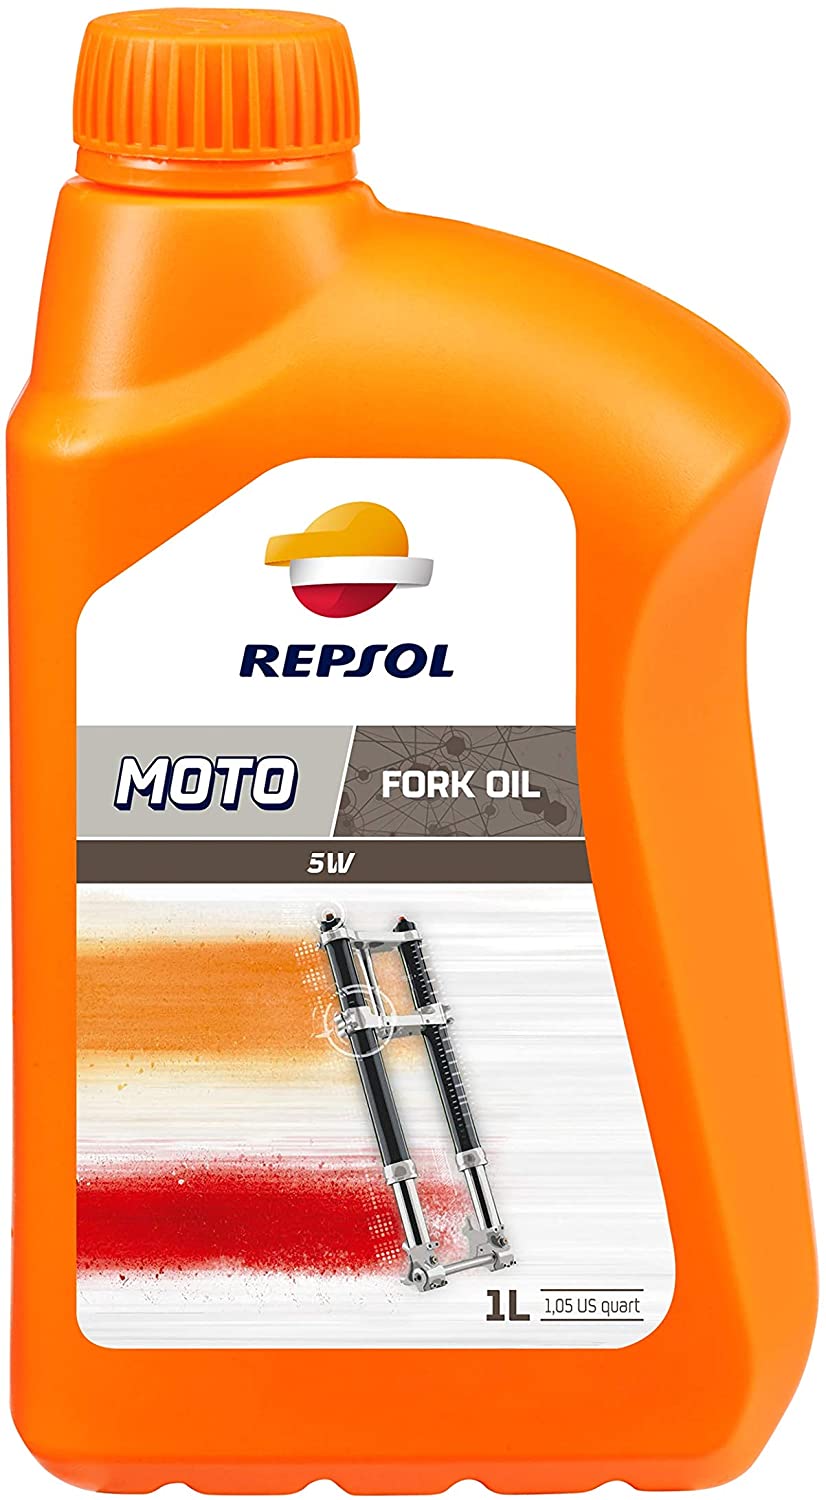 REP461001 REPSOL REPSOL MOTO FORK OIL 5W 1L